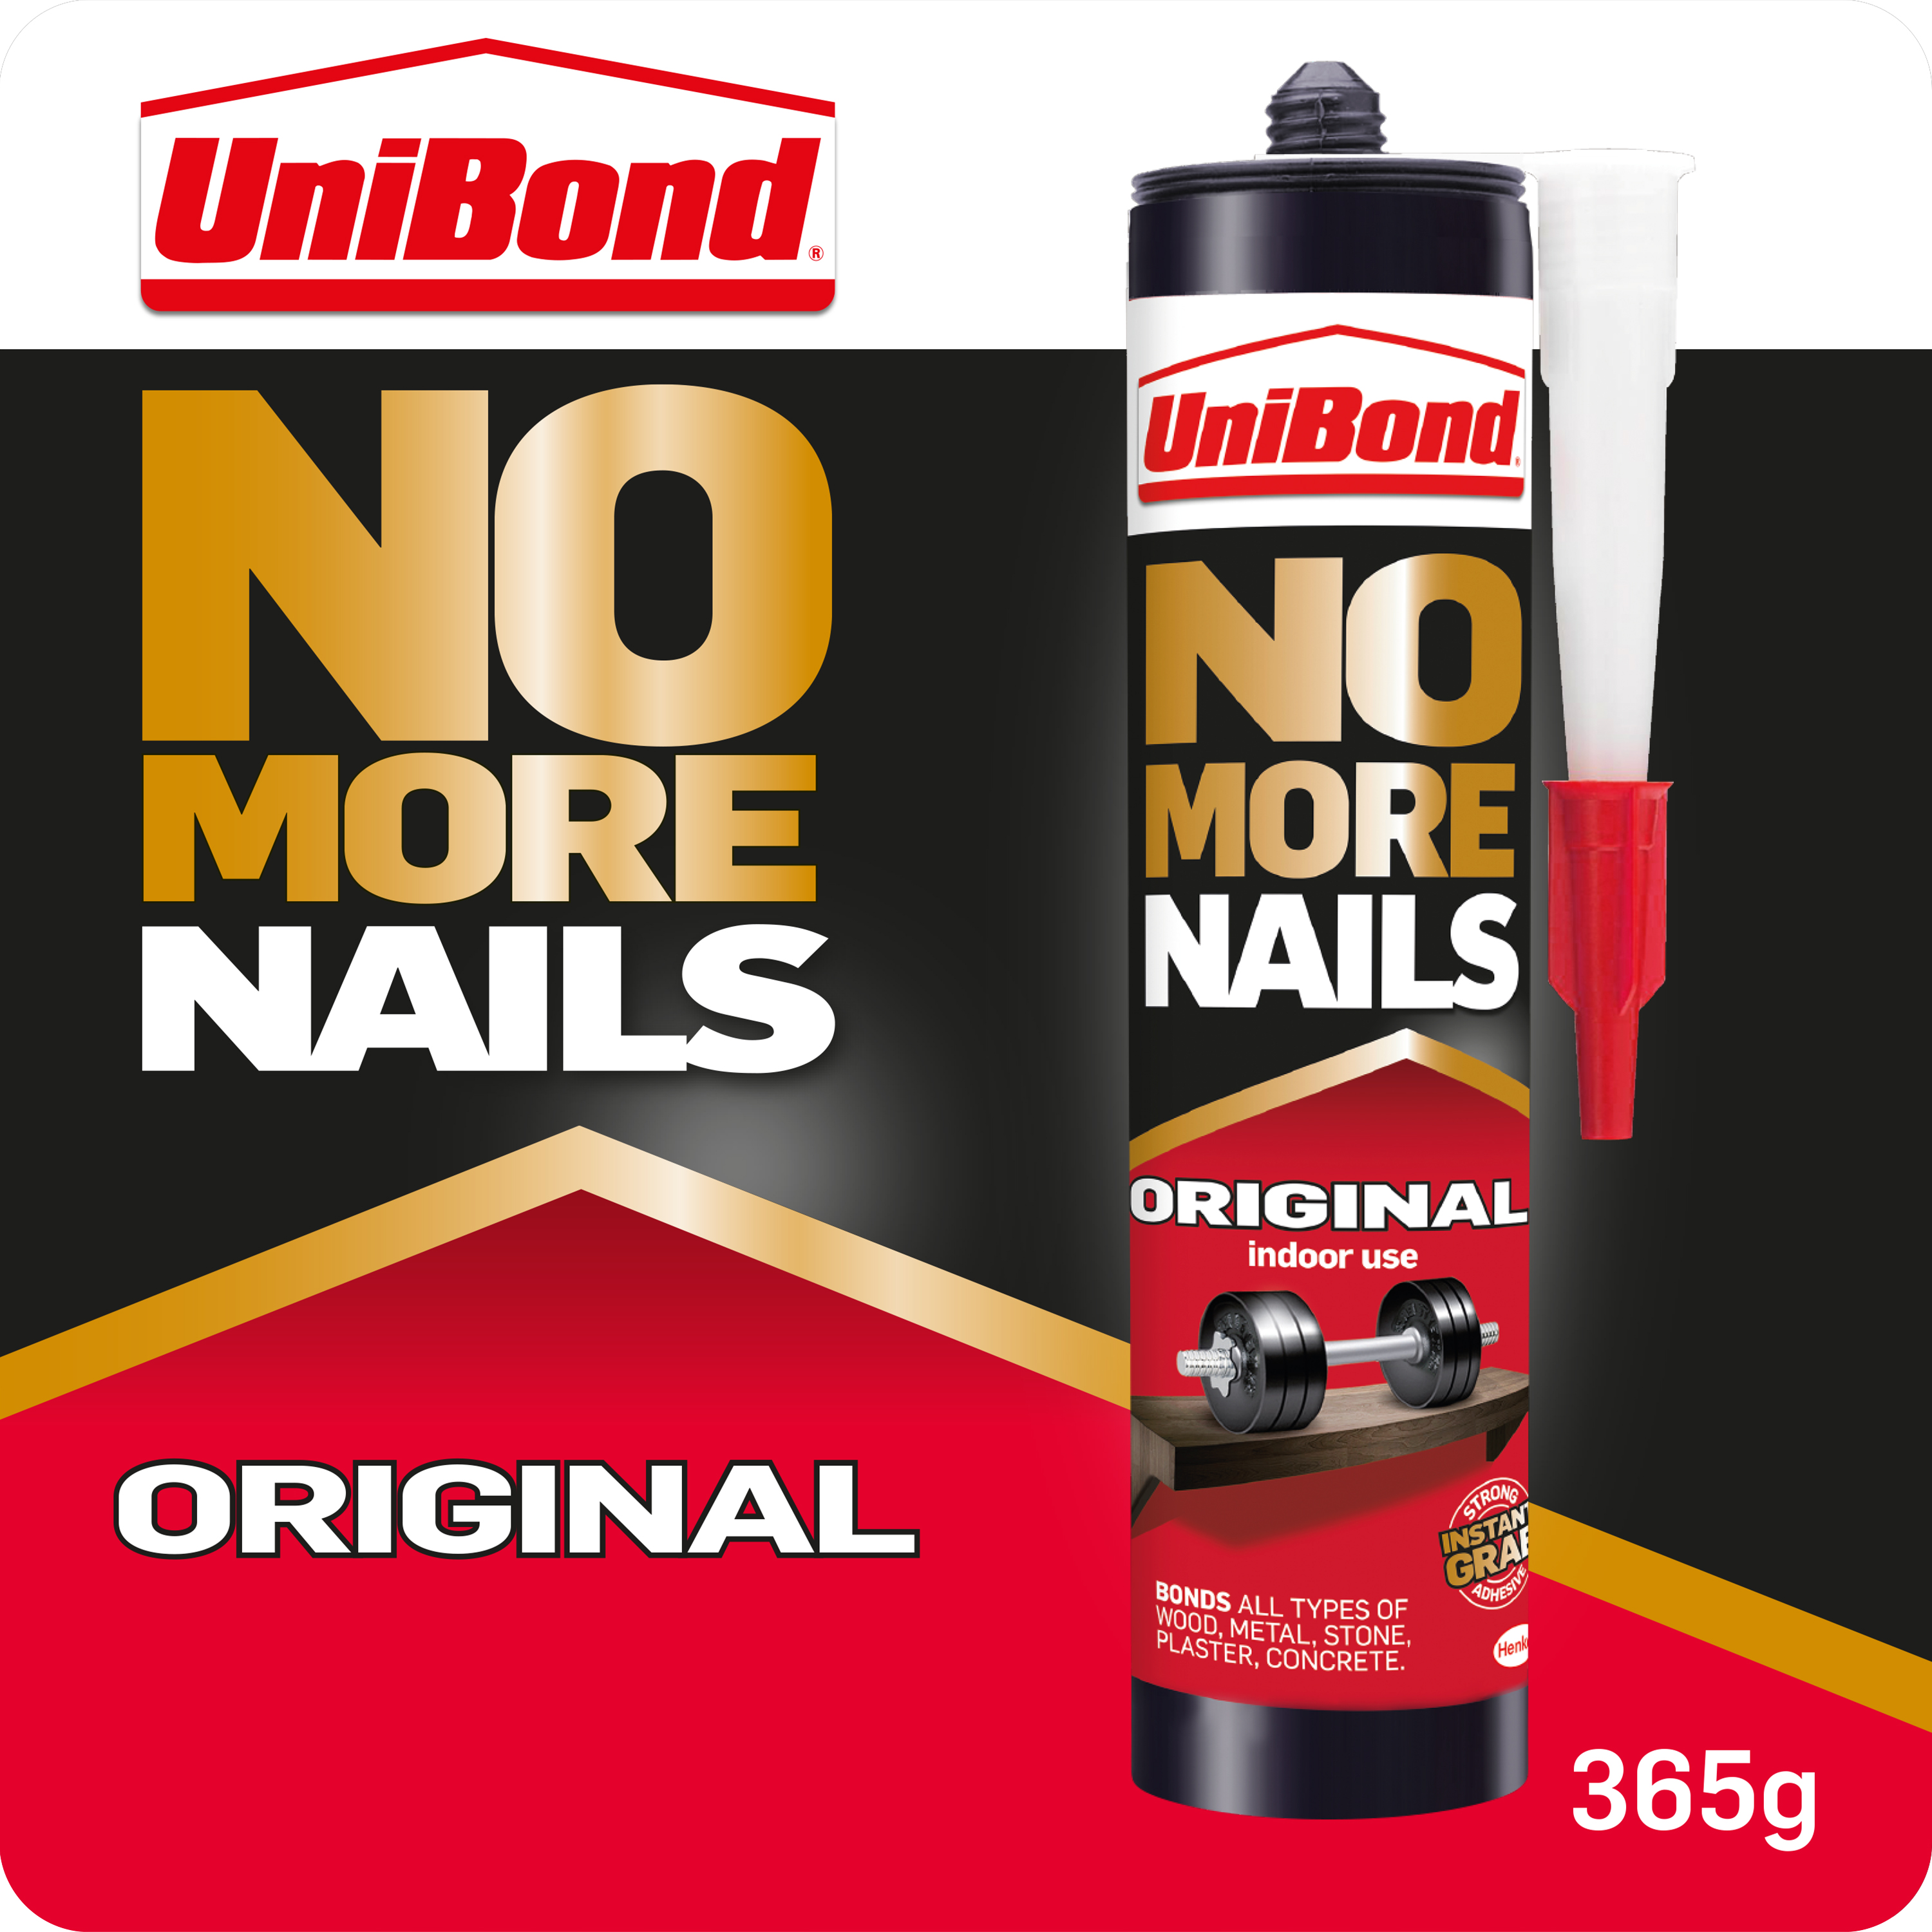 Image of Unibond No More Nails Original Cartridge - 365g